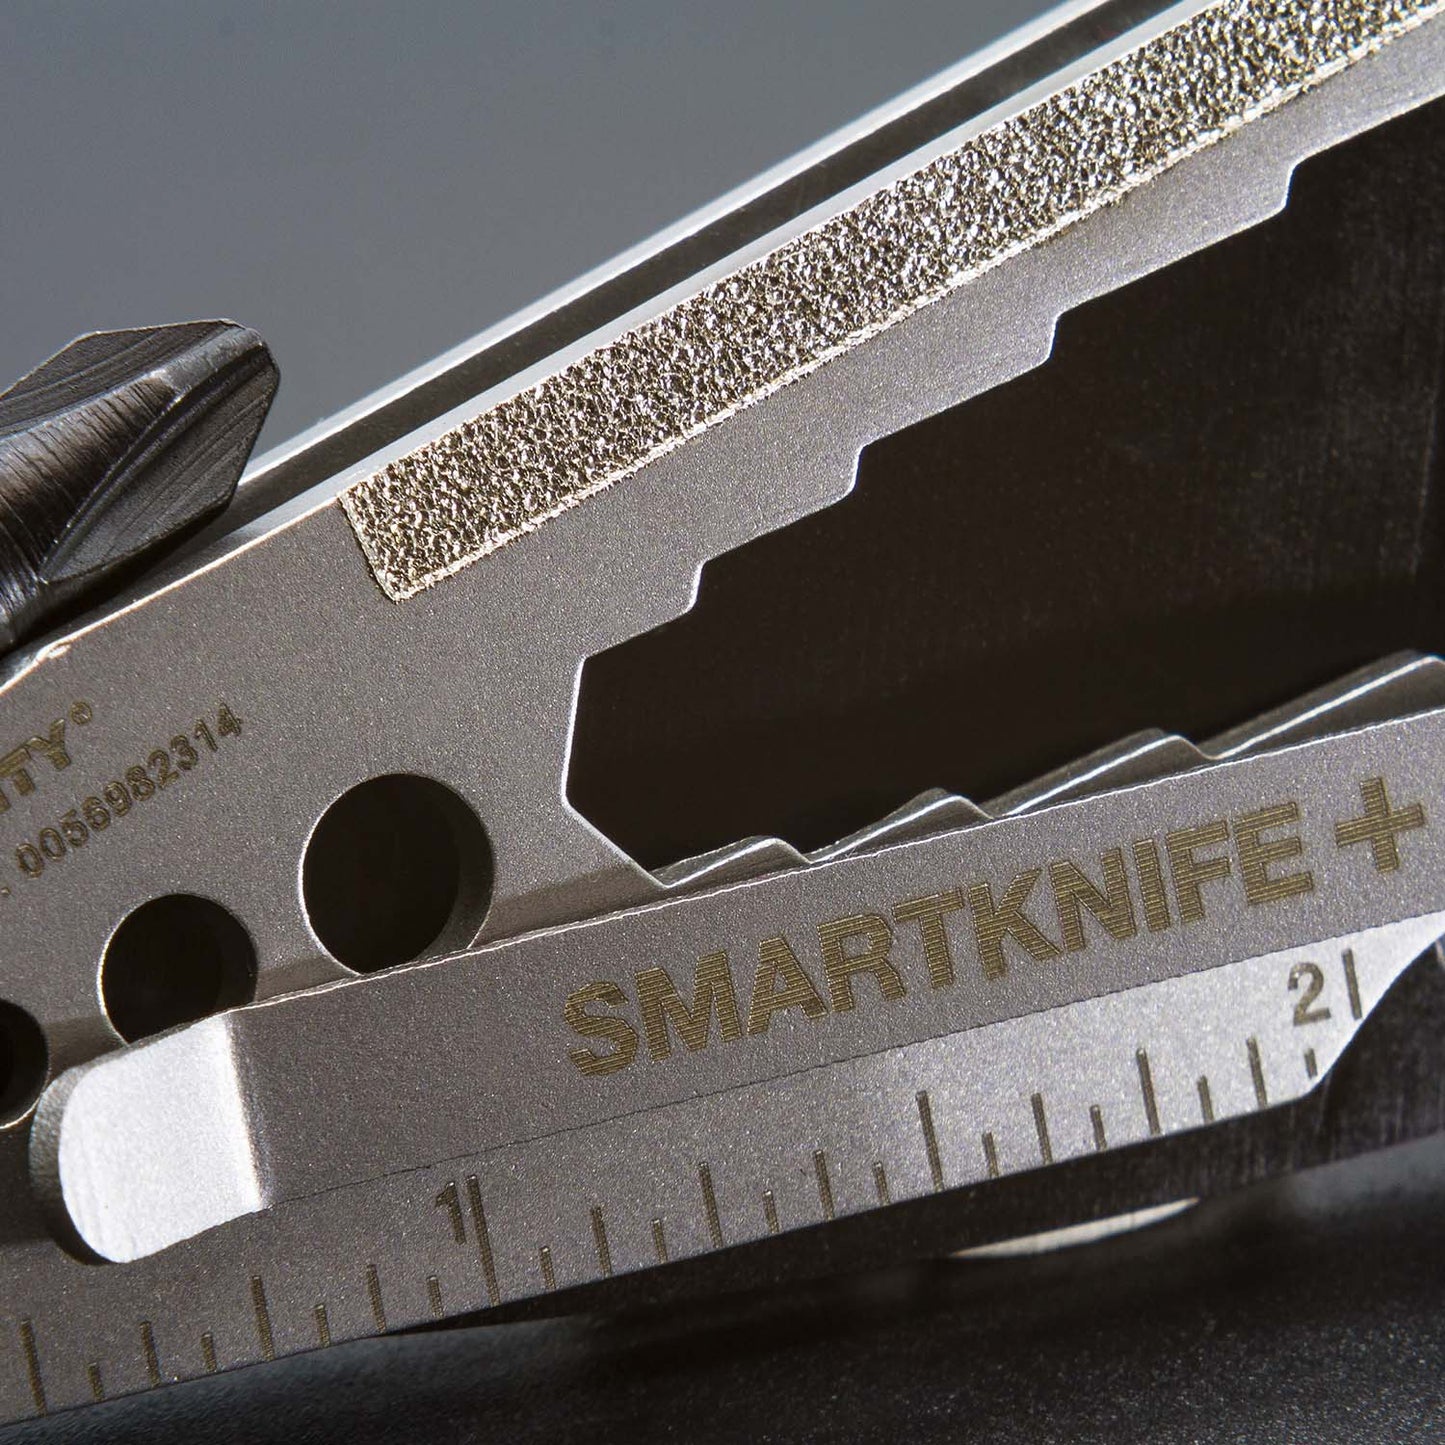 Smartknife +